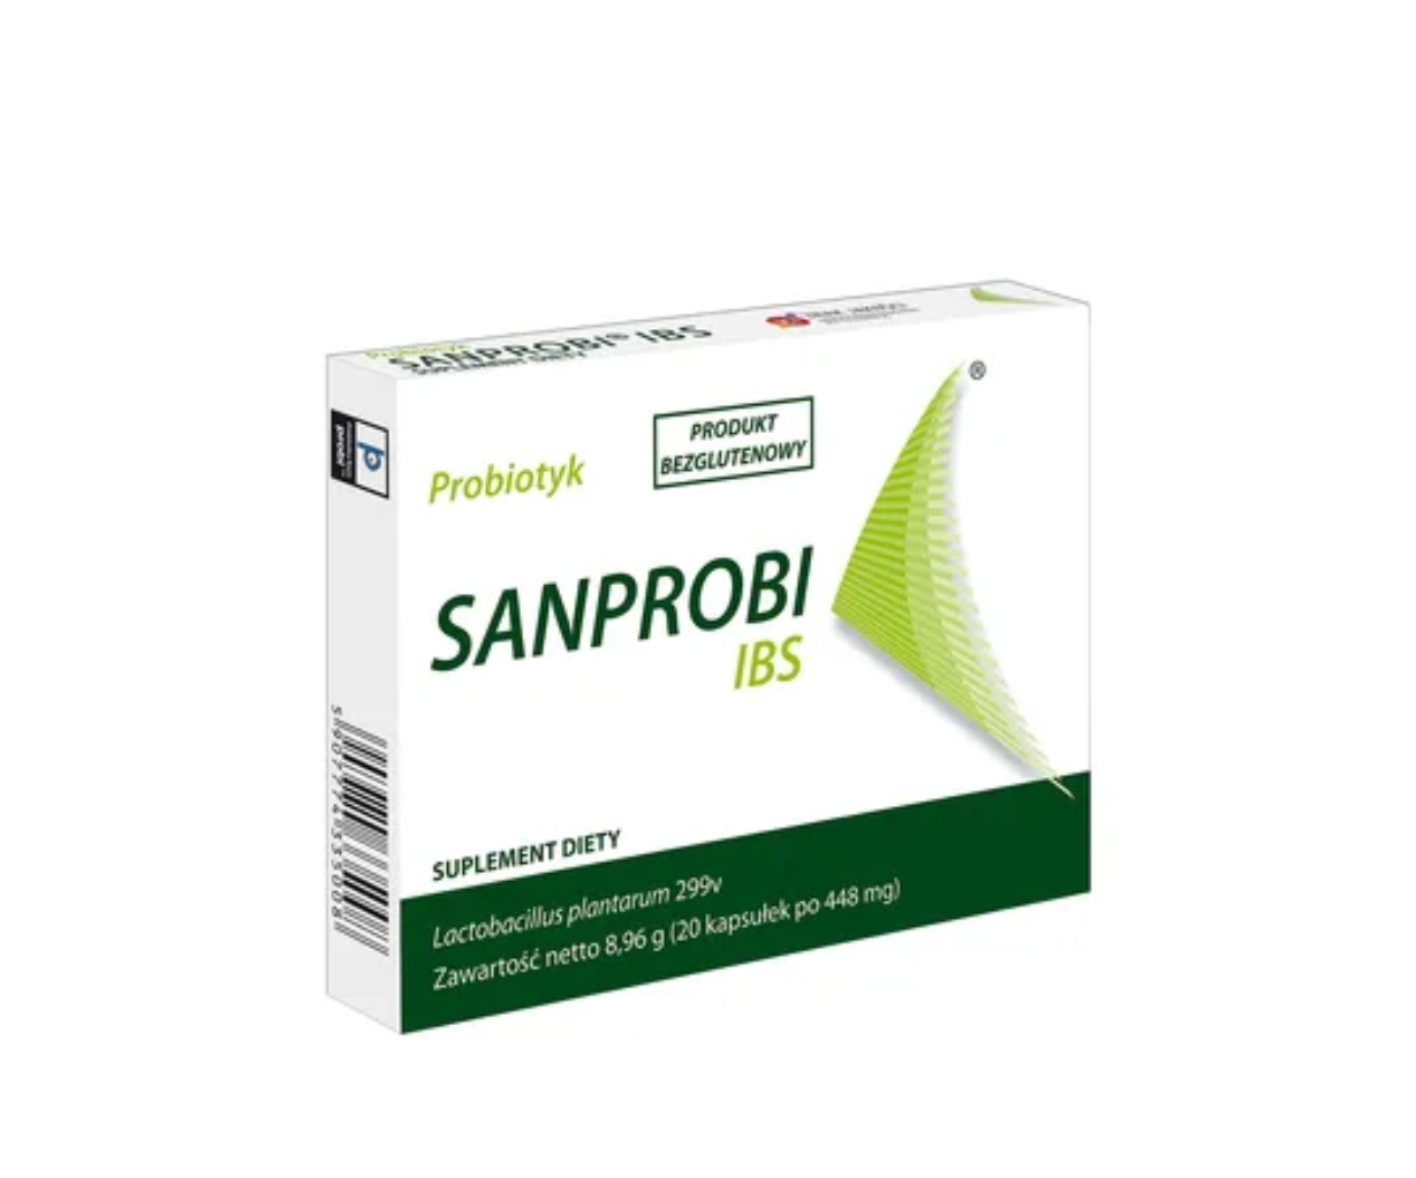 Sanprobi IBS, probiotyk suplement diety